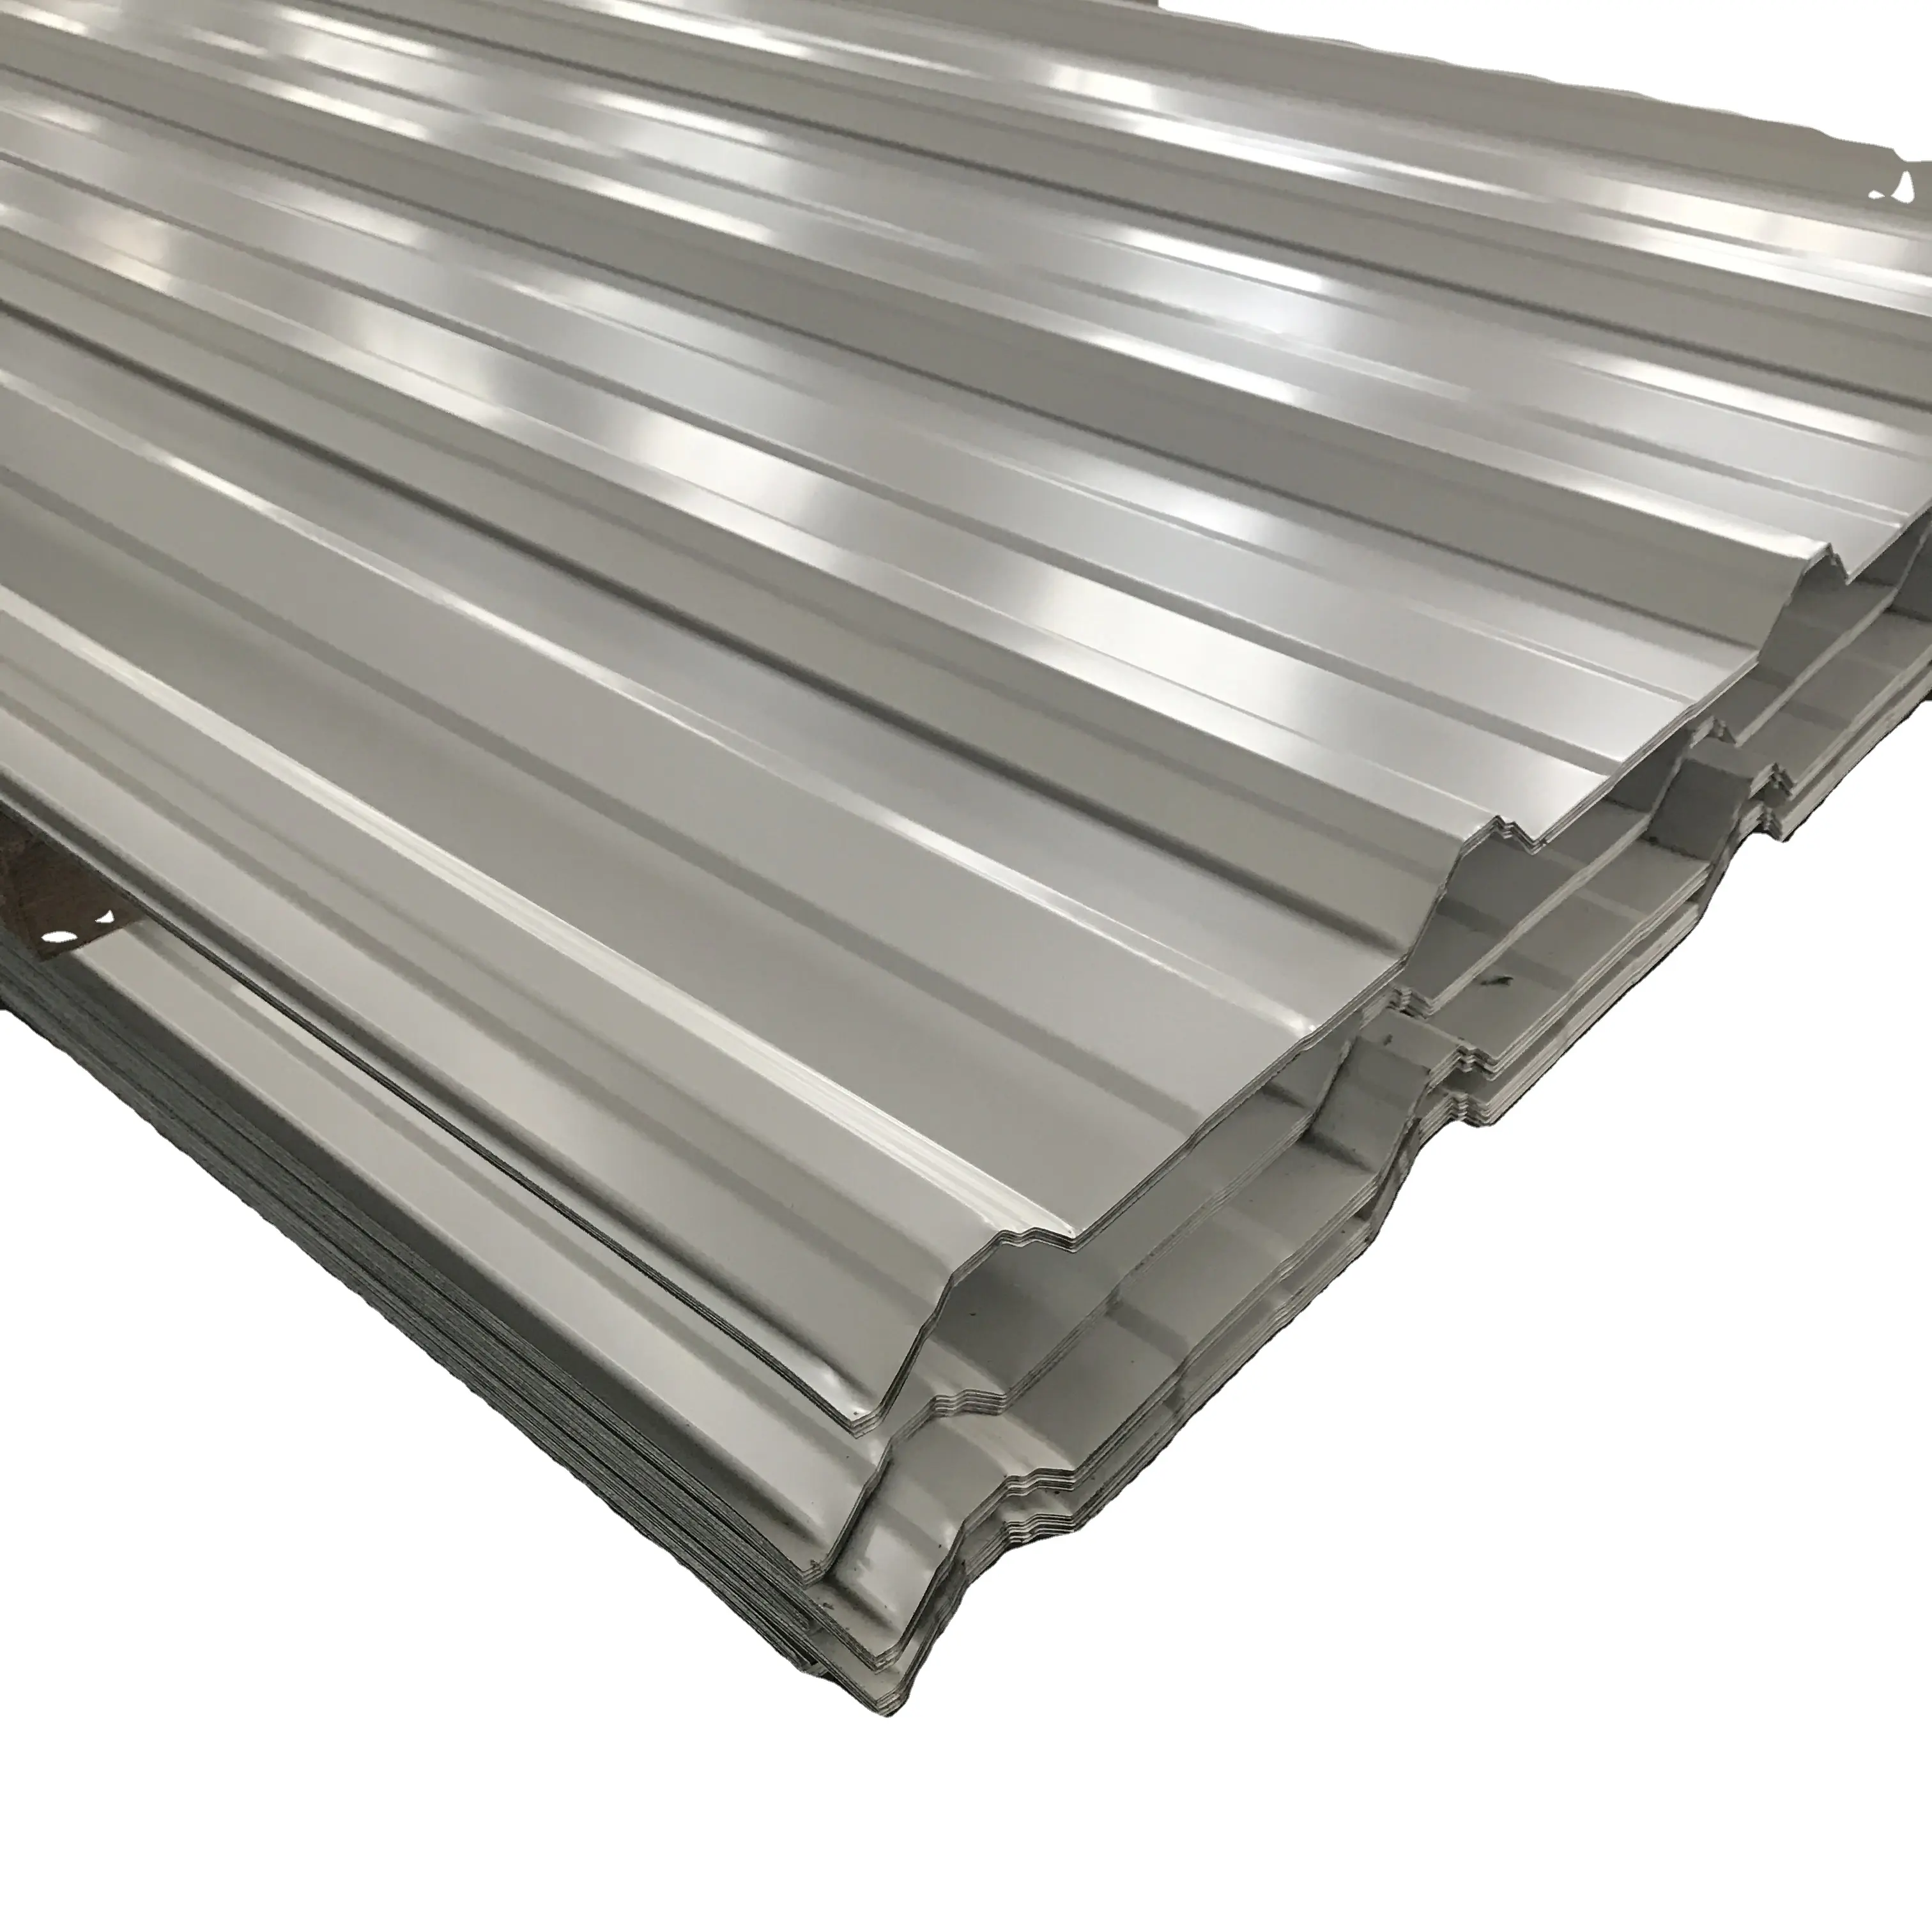 50 Jahre Garantie 6mm Dicke 960mm Zink aluminium beschichtetes Stahldach blech